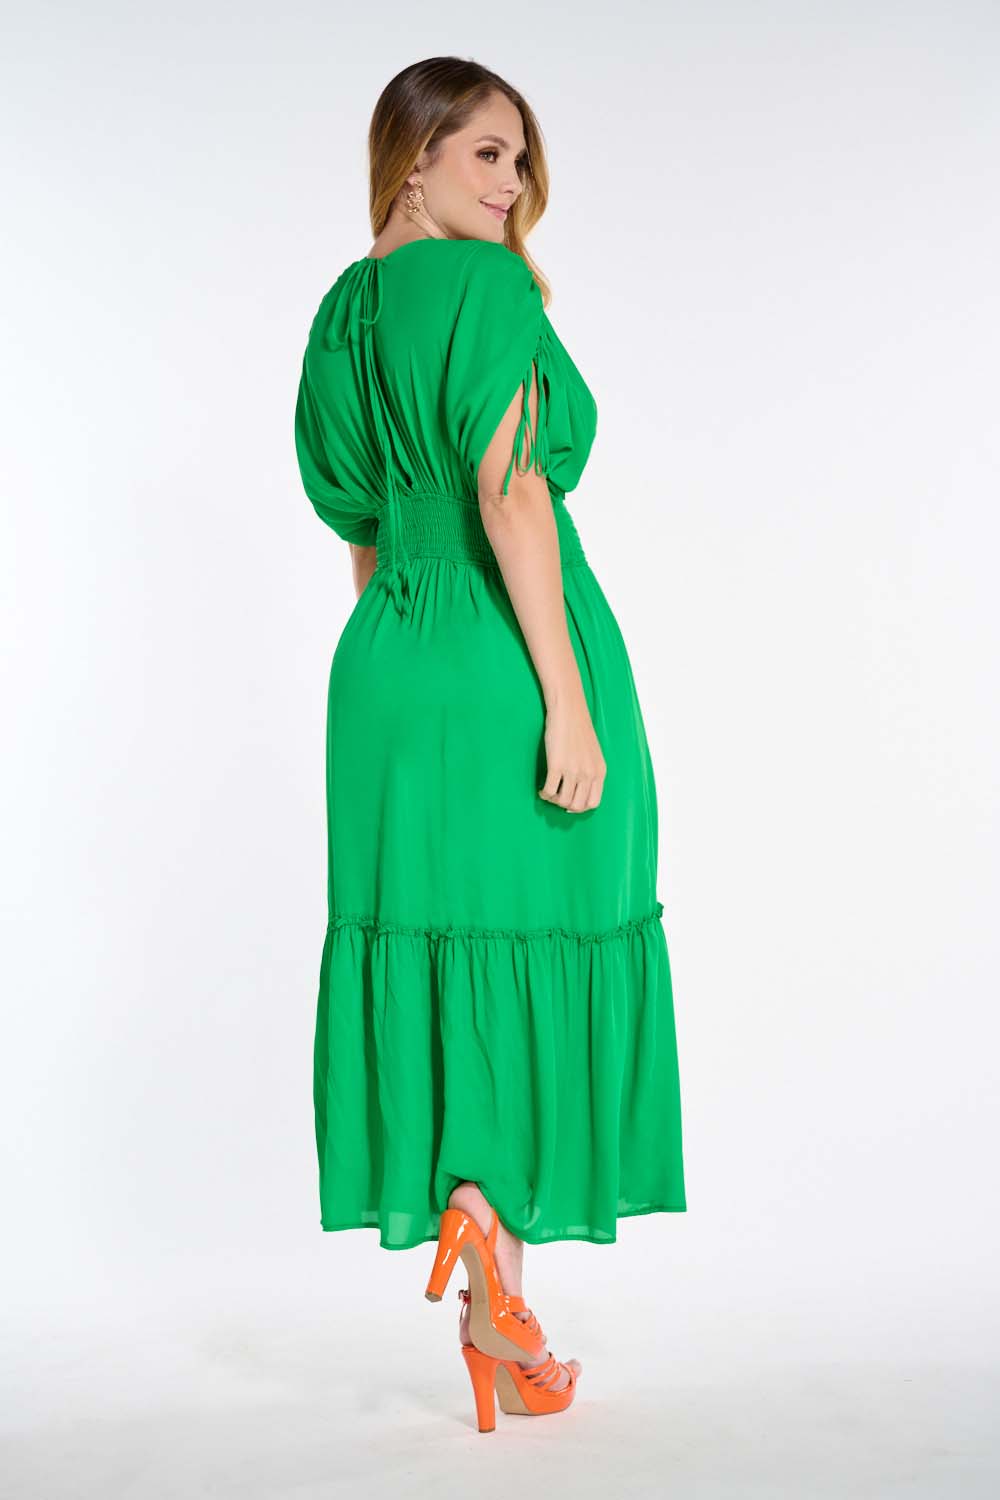 Vestido Color Verde Para Dama Mundo Terra